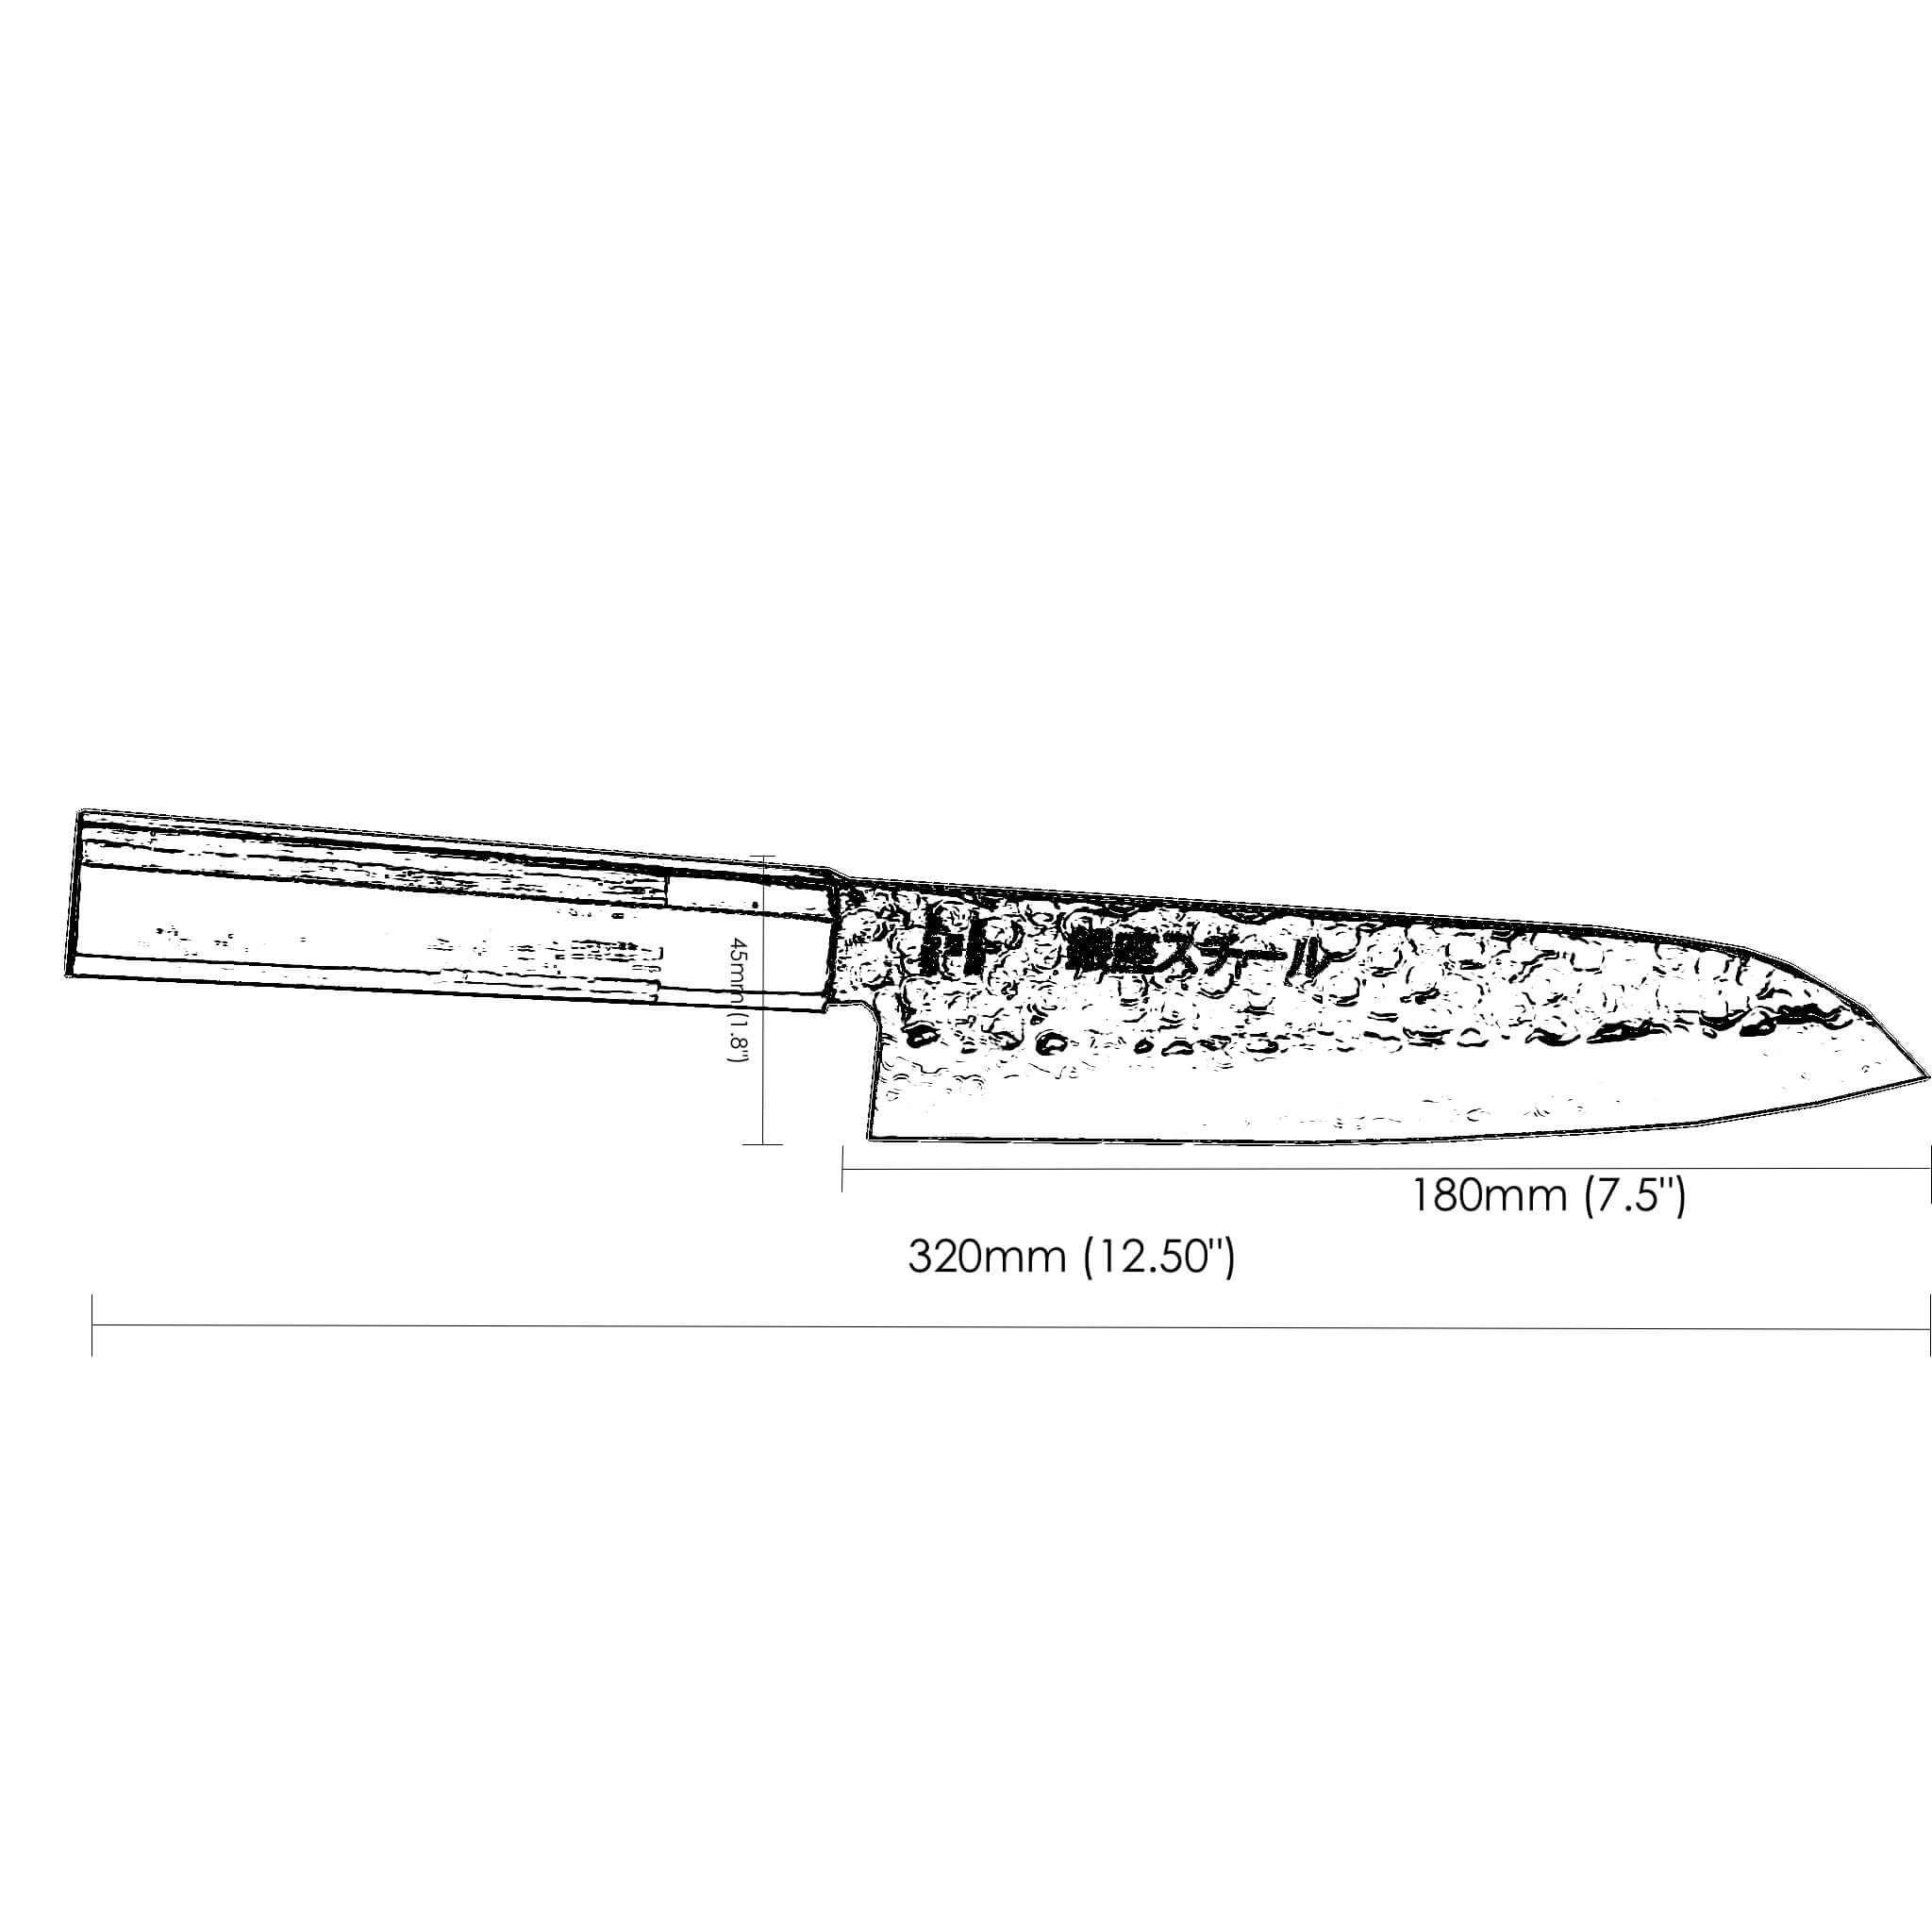 Takayama 180 - Santoku Knife 180mm Blade